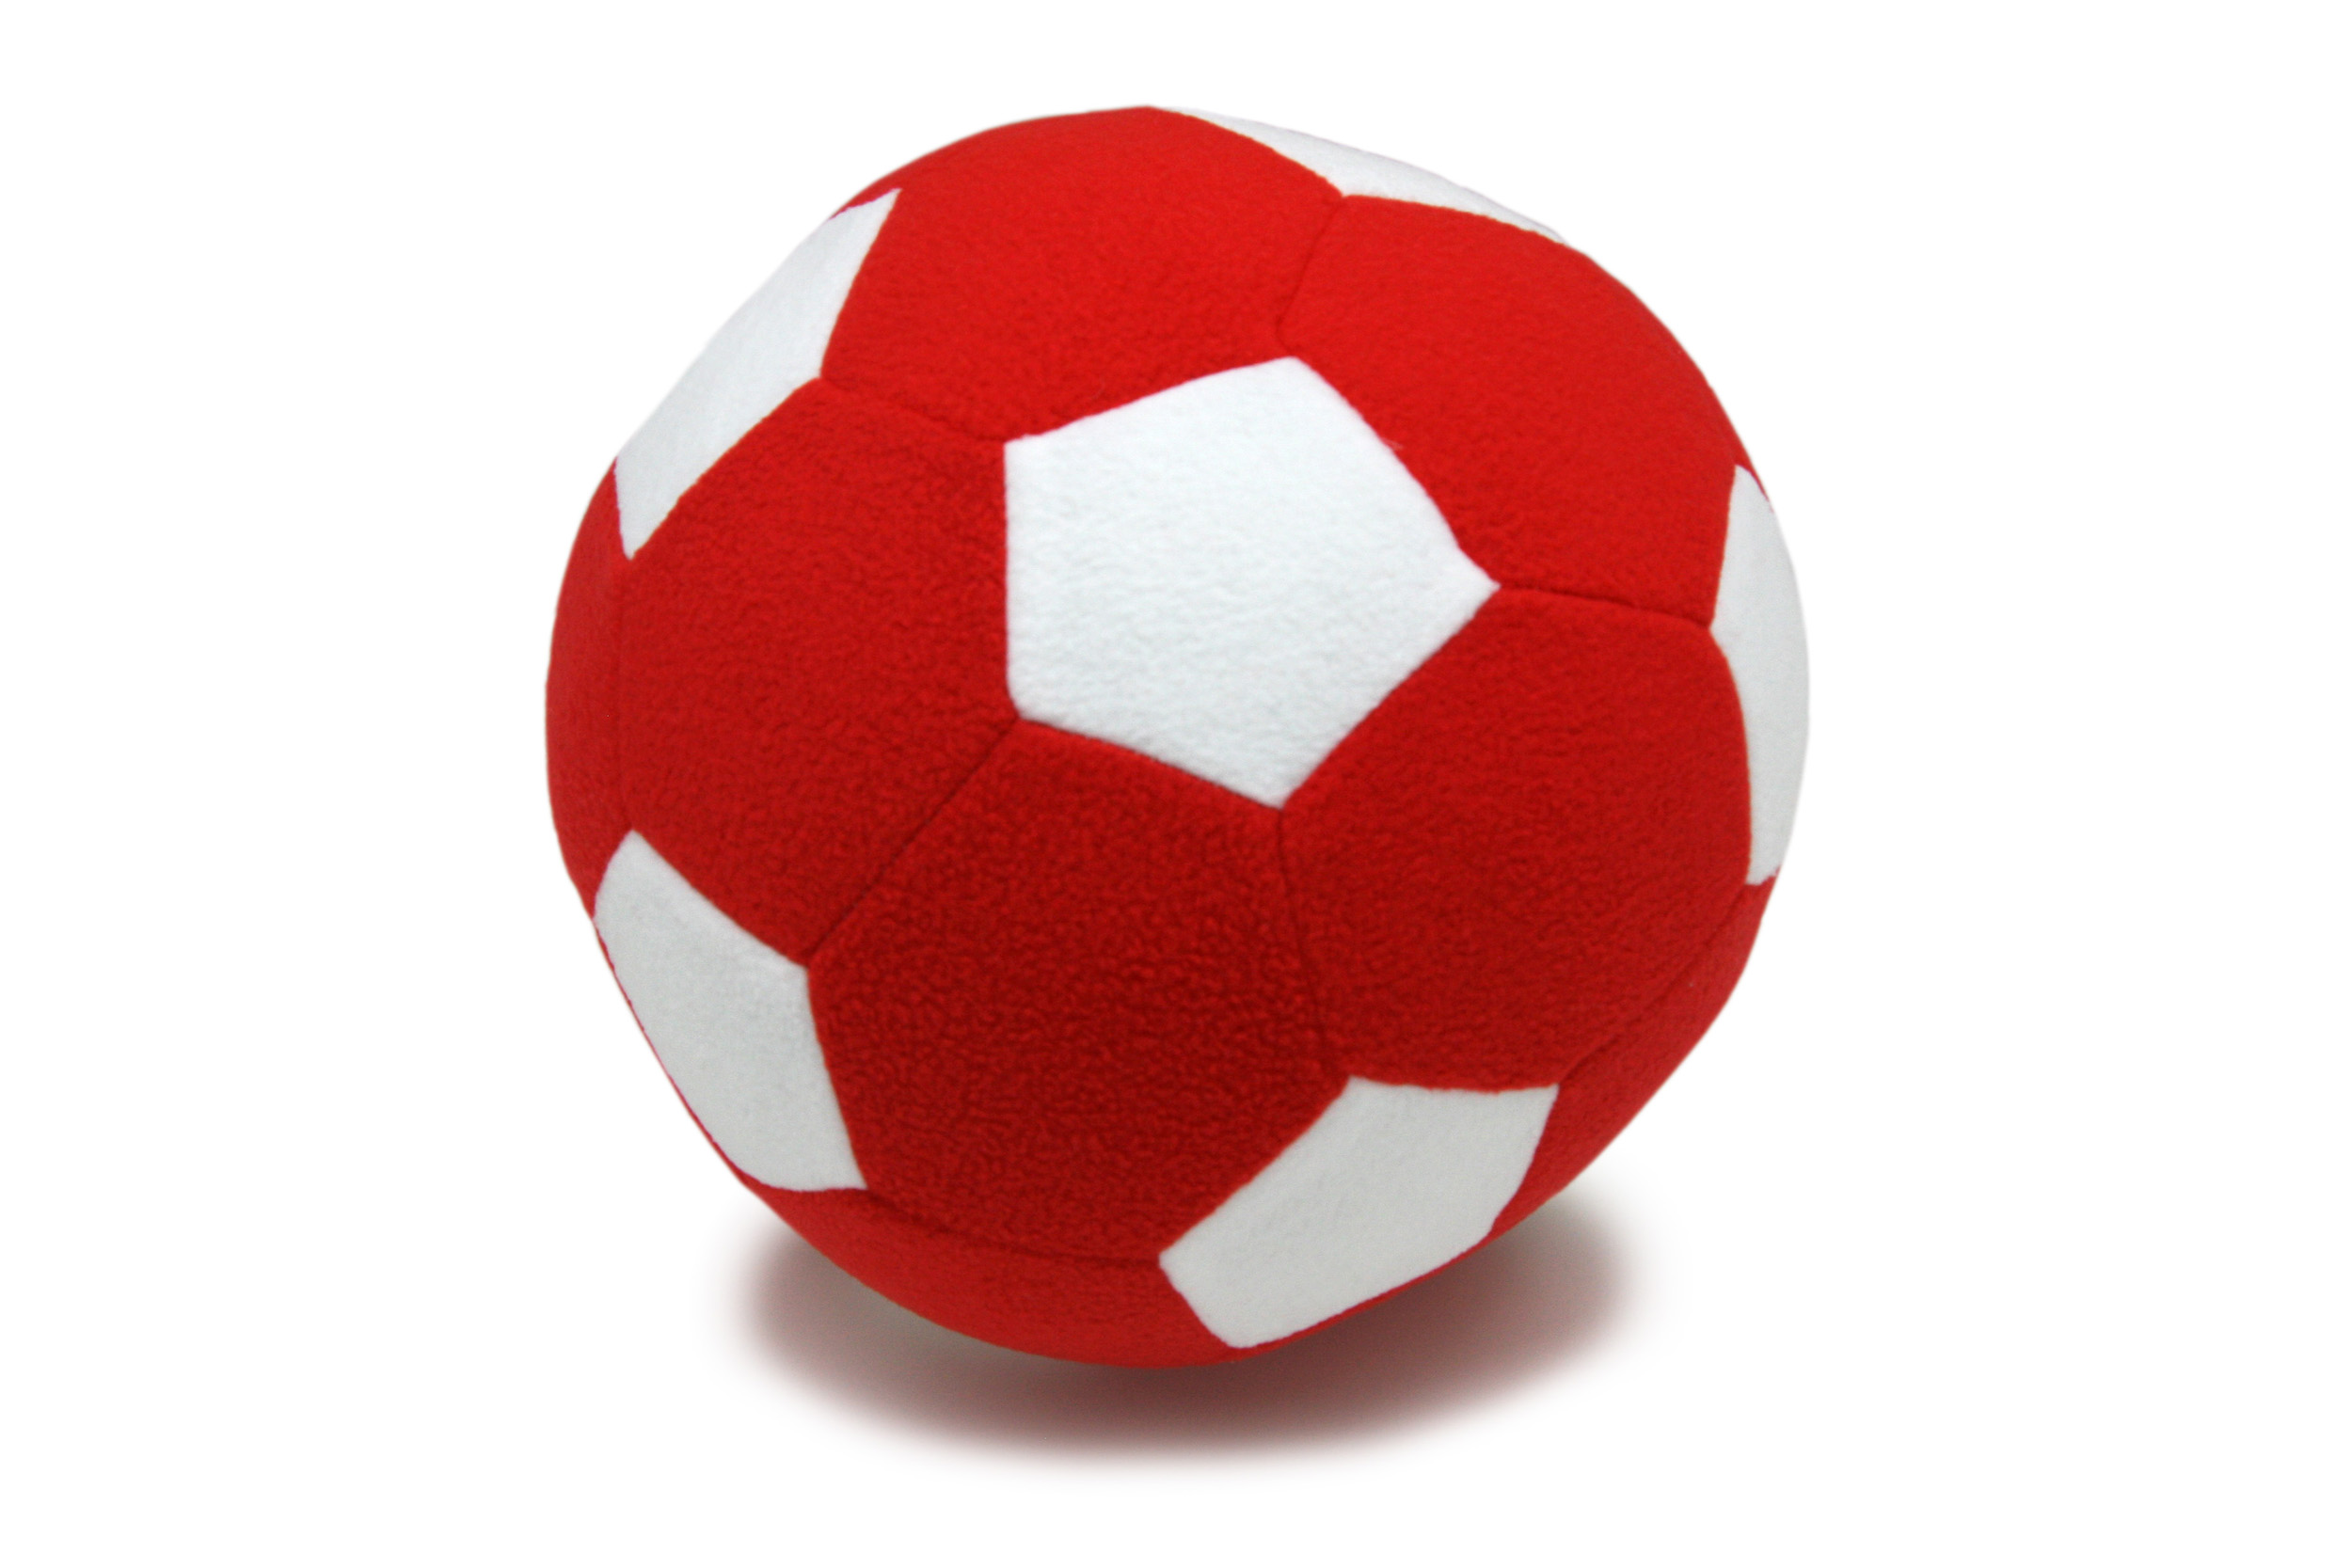 Детский мяч Magic Bear Toys F-100/RW Мяч мягкий цвет красно-белый 23 см детский мяч magic bear toys f 100 br мяч мягкий сине красный 23 см